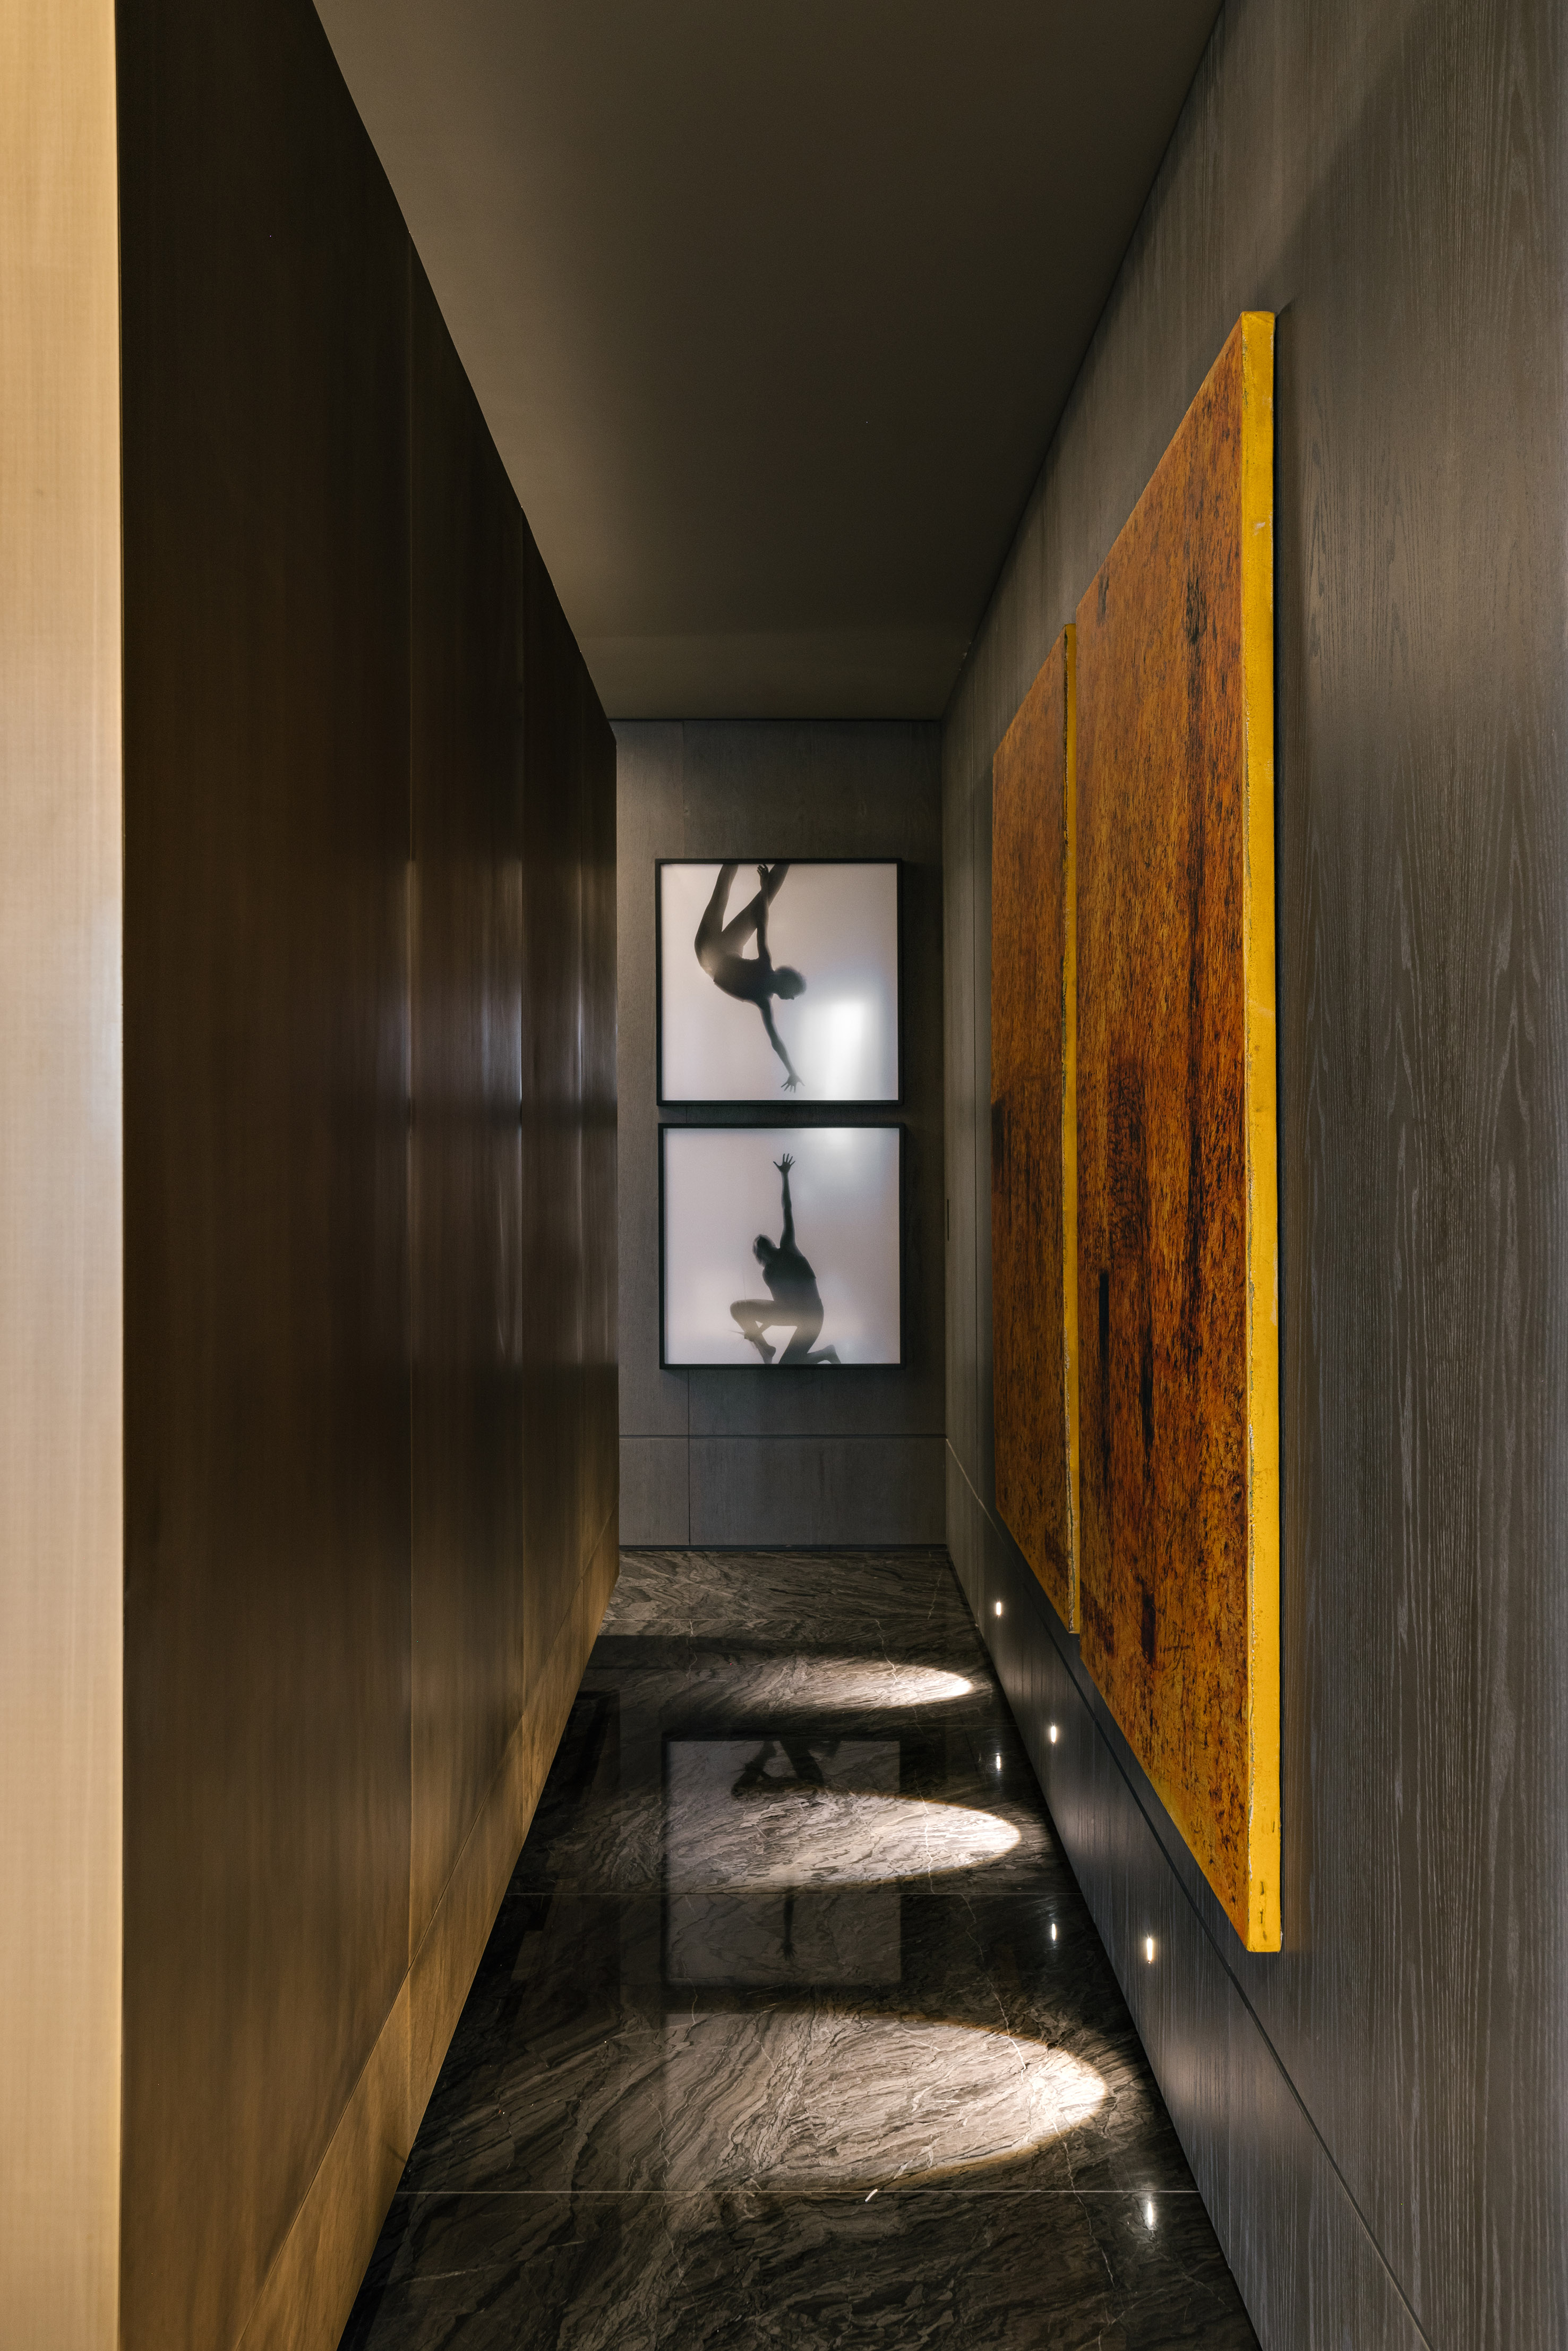 Paleta sóbria e iluminação indireta dá ares de galeria a apê de 320 m². Projeto de David Bastos. Na foto, corredor com ares de galeria de arte.